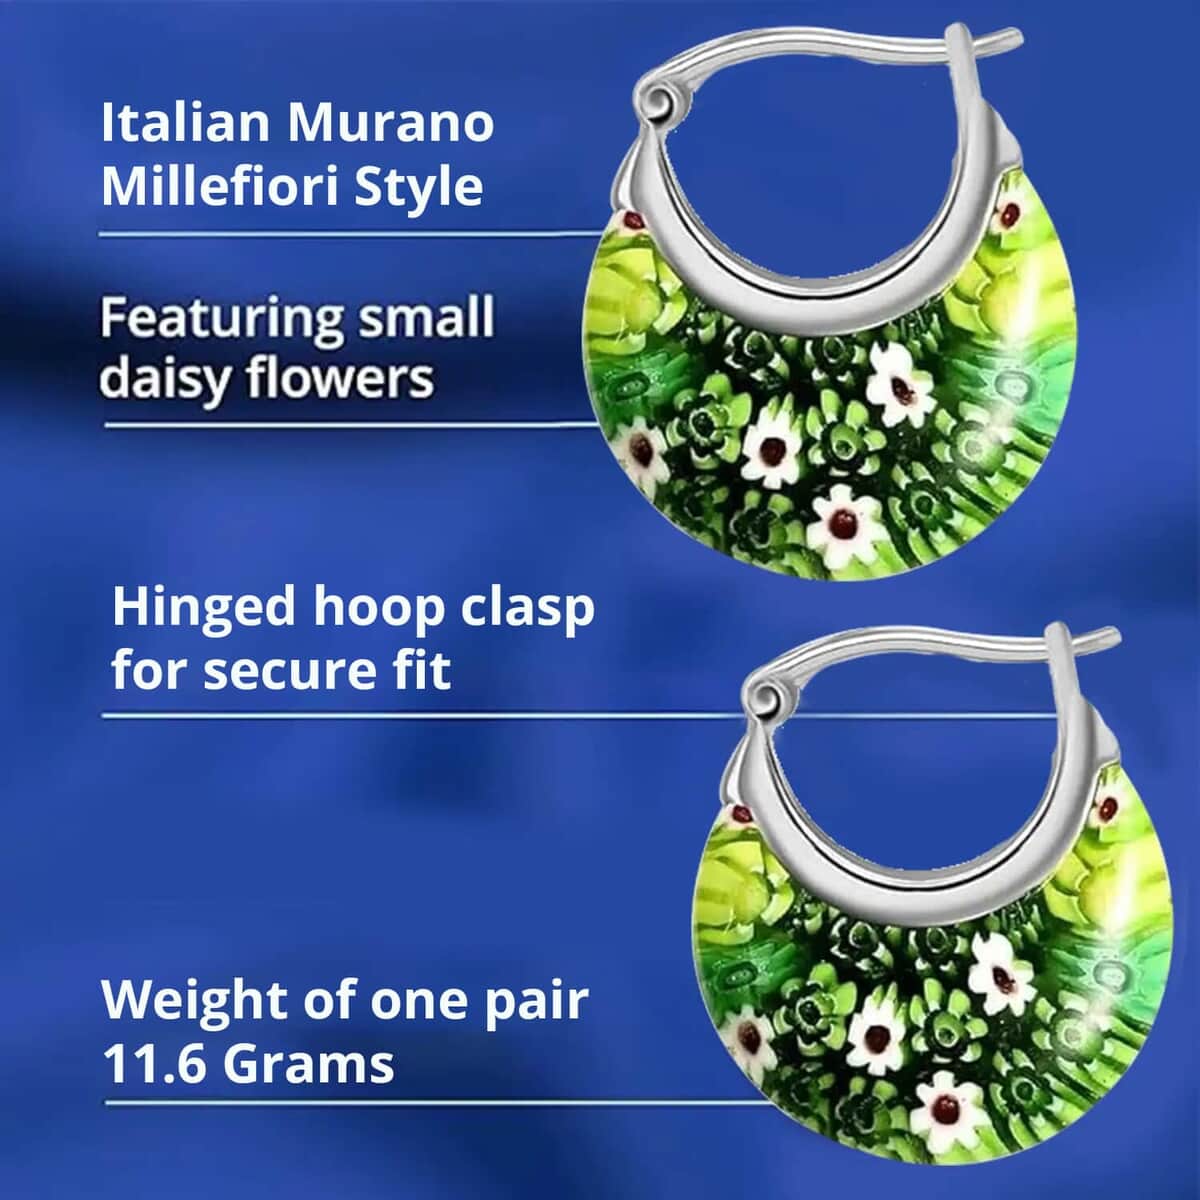 Green Murano Style Hoop Basket Earrings in Stainless Steel, Floral Millefiori Earrings, Sweatproof Hypoallergenic Earrings (Del. in 15-20 Days) image number 2